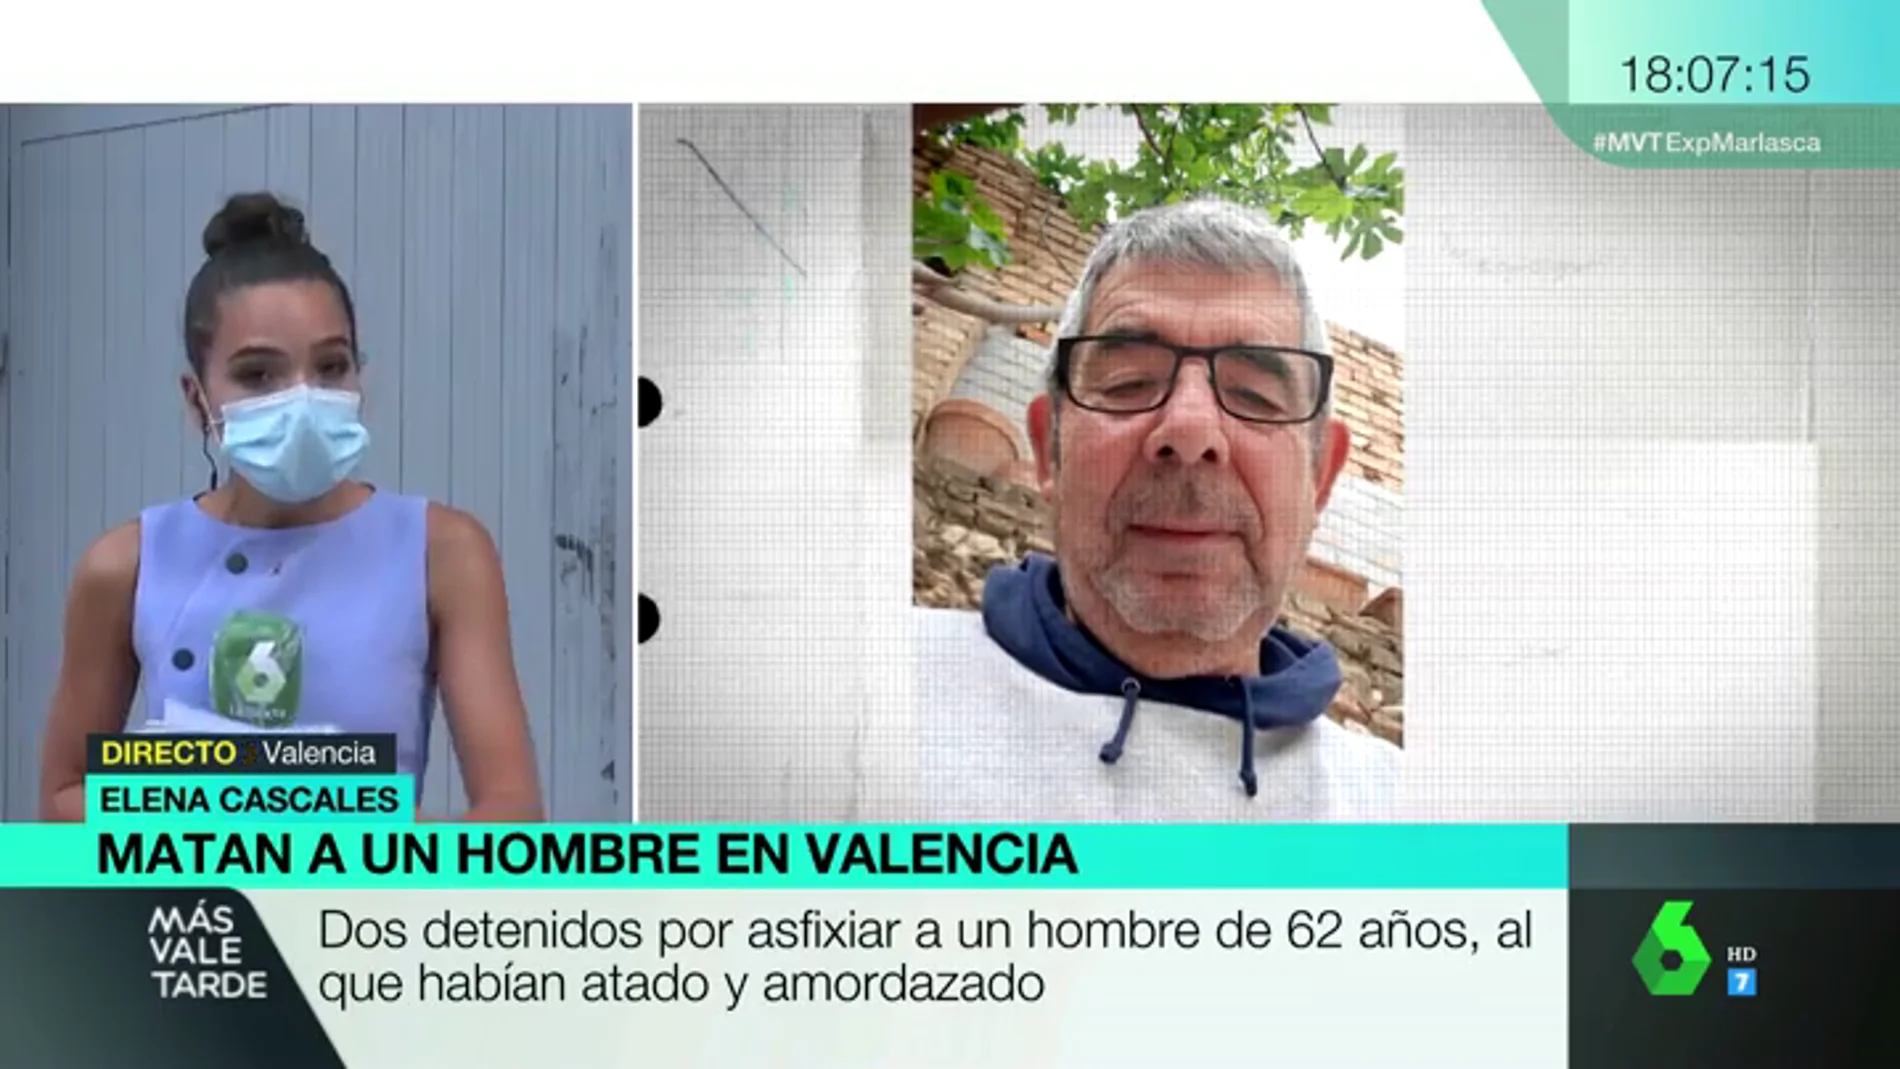 Dos detenidos por amordazar y asfixiar a un hombre de 62 años en Valencia